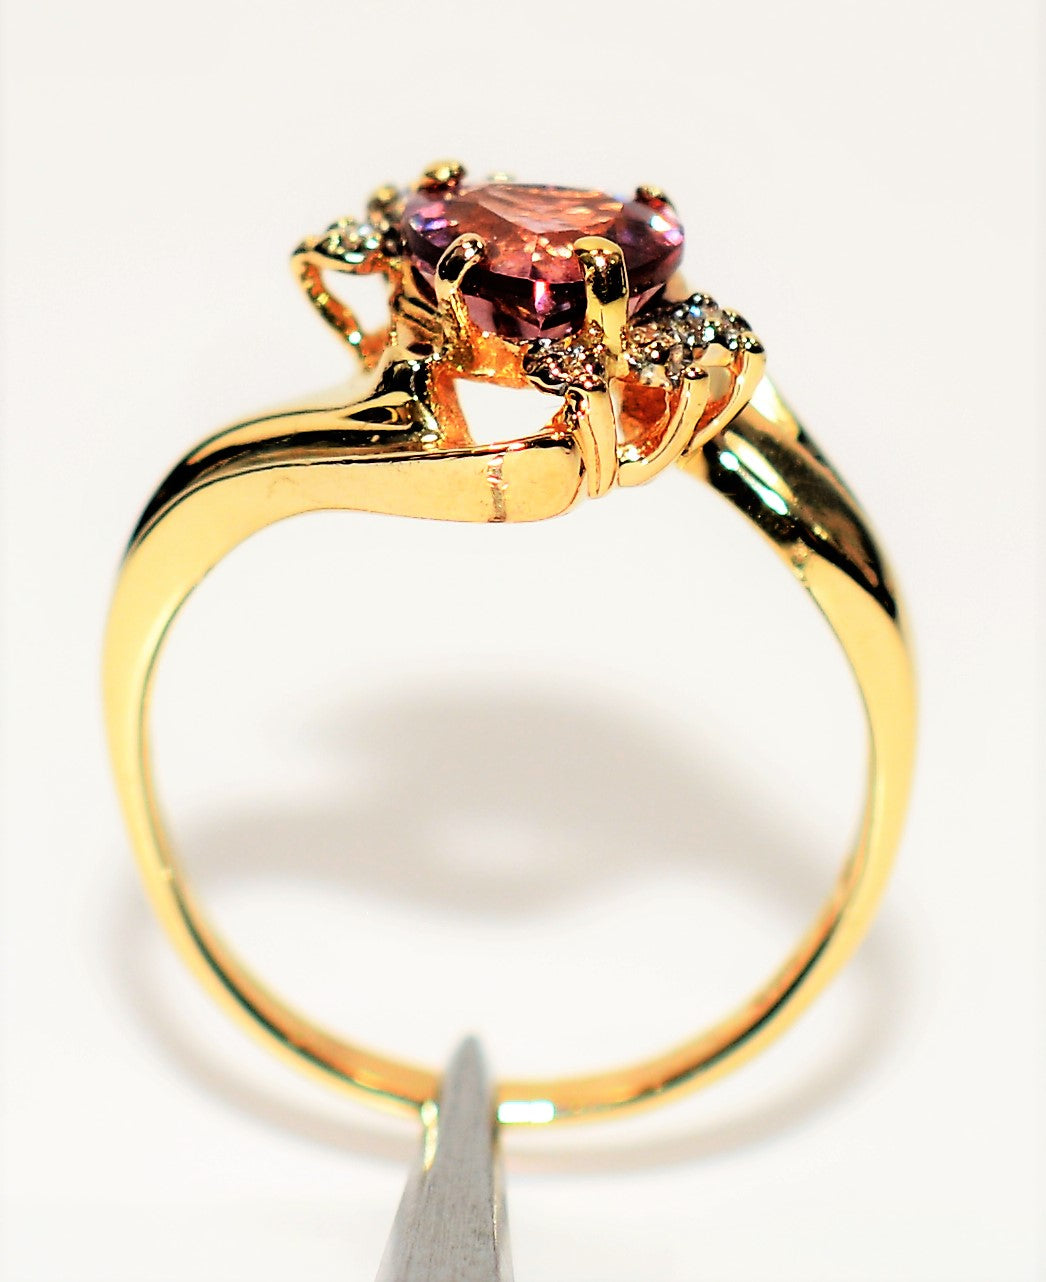 Natural Malaia Malaya Garnet & Diamond Ring 14K Solid Gold 1.10tcw Heart Ring Engagement Ring Gemstone Ring Women's Ring Estate Jewelry